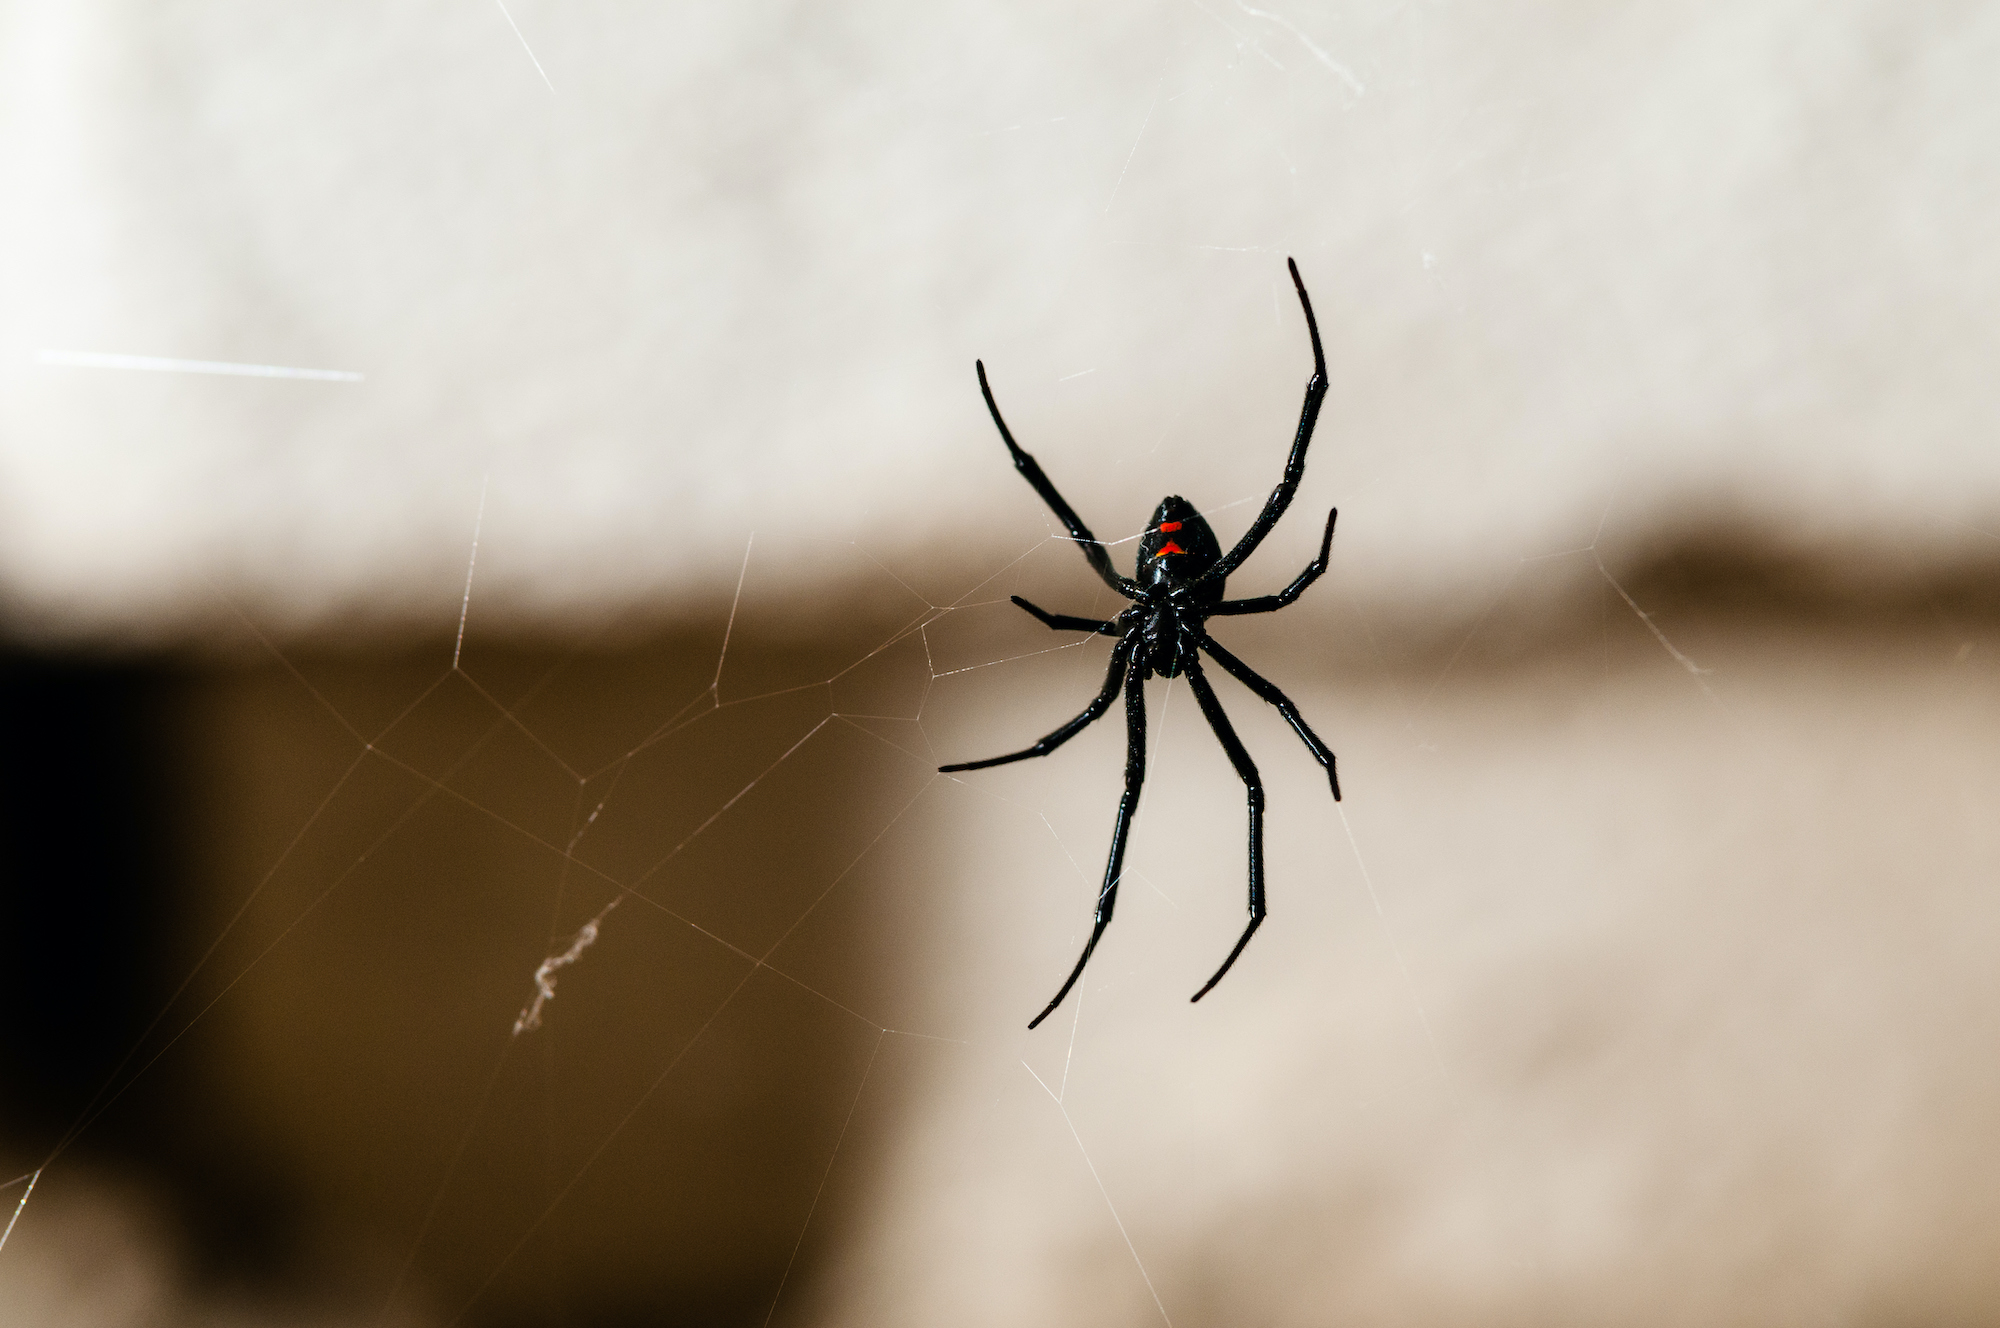 black widow spiderlings